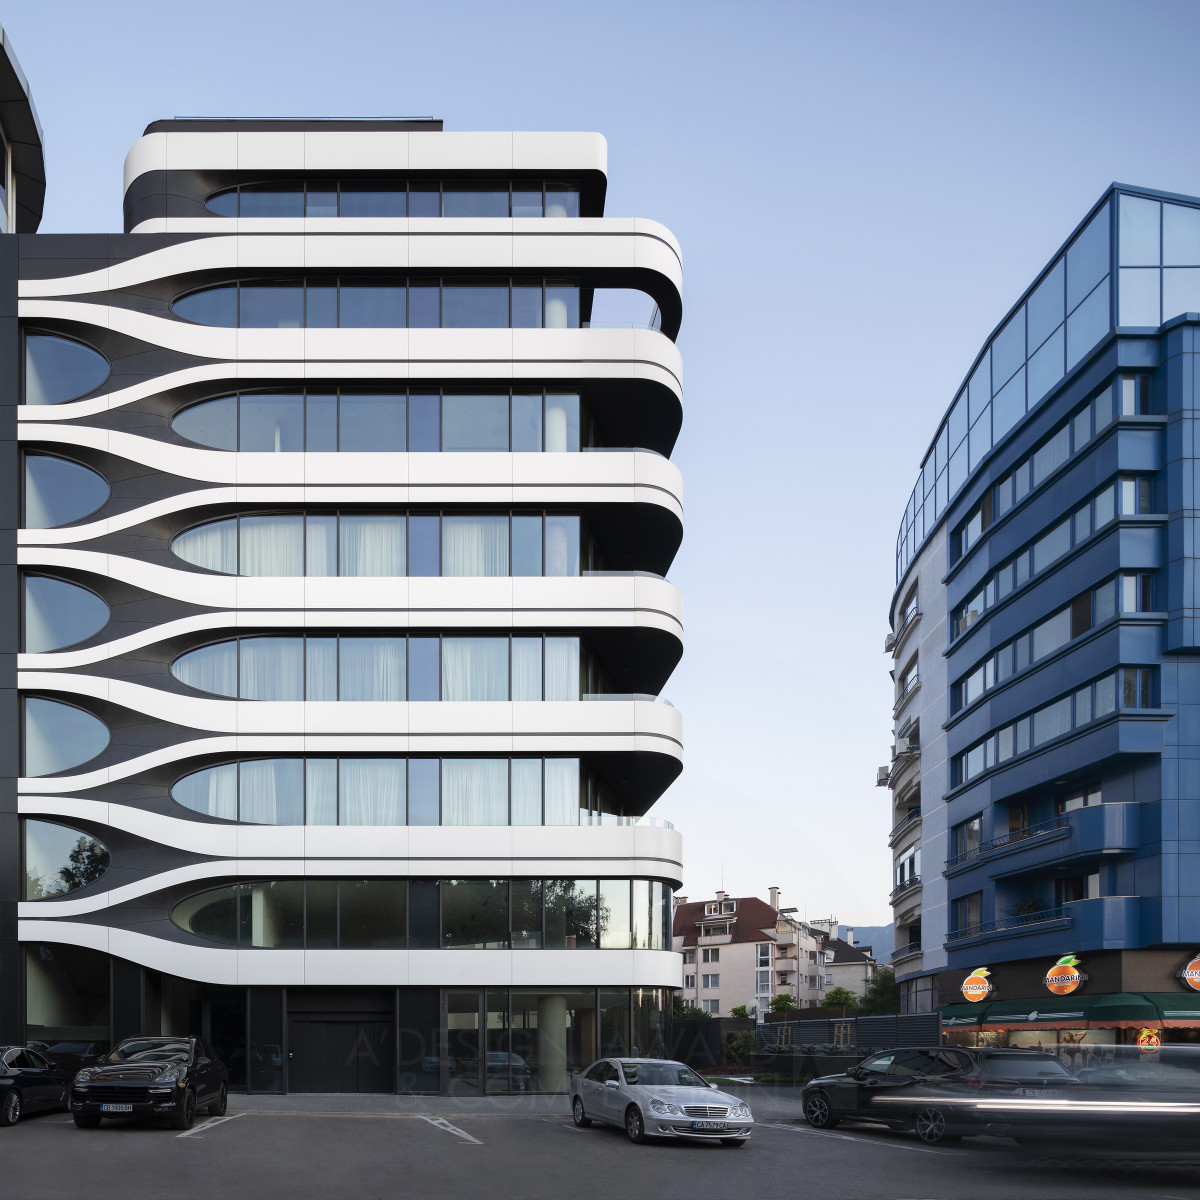 B73 Apartments: Ein innovatives Wohngebäude mit außergewöhnlichem Design